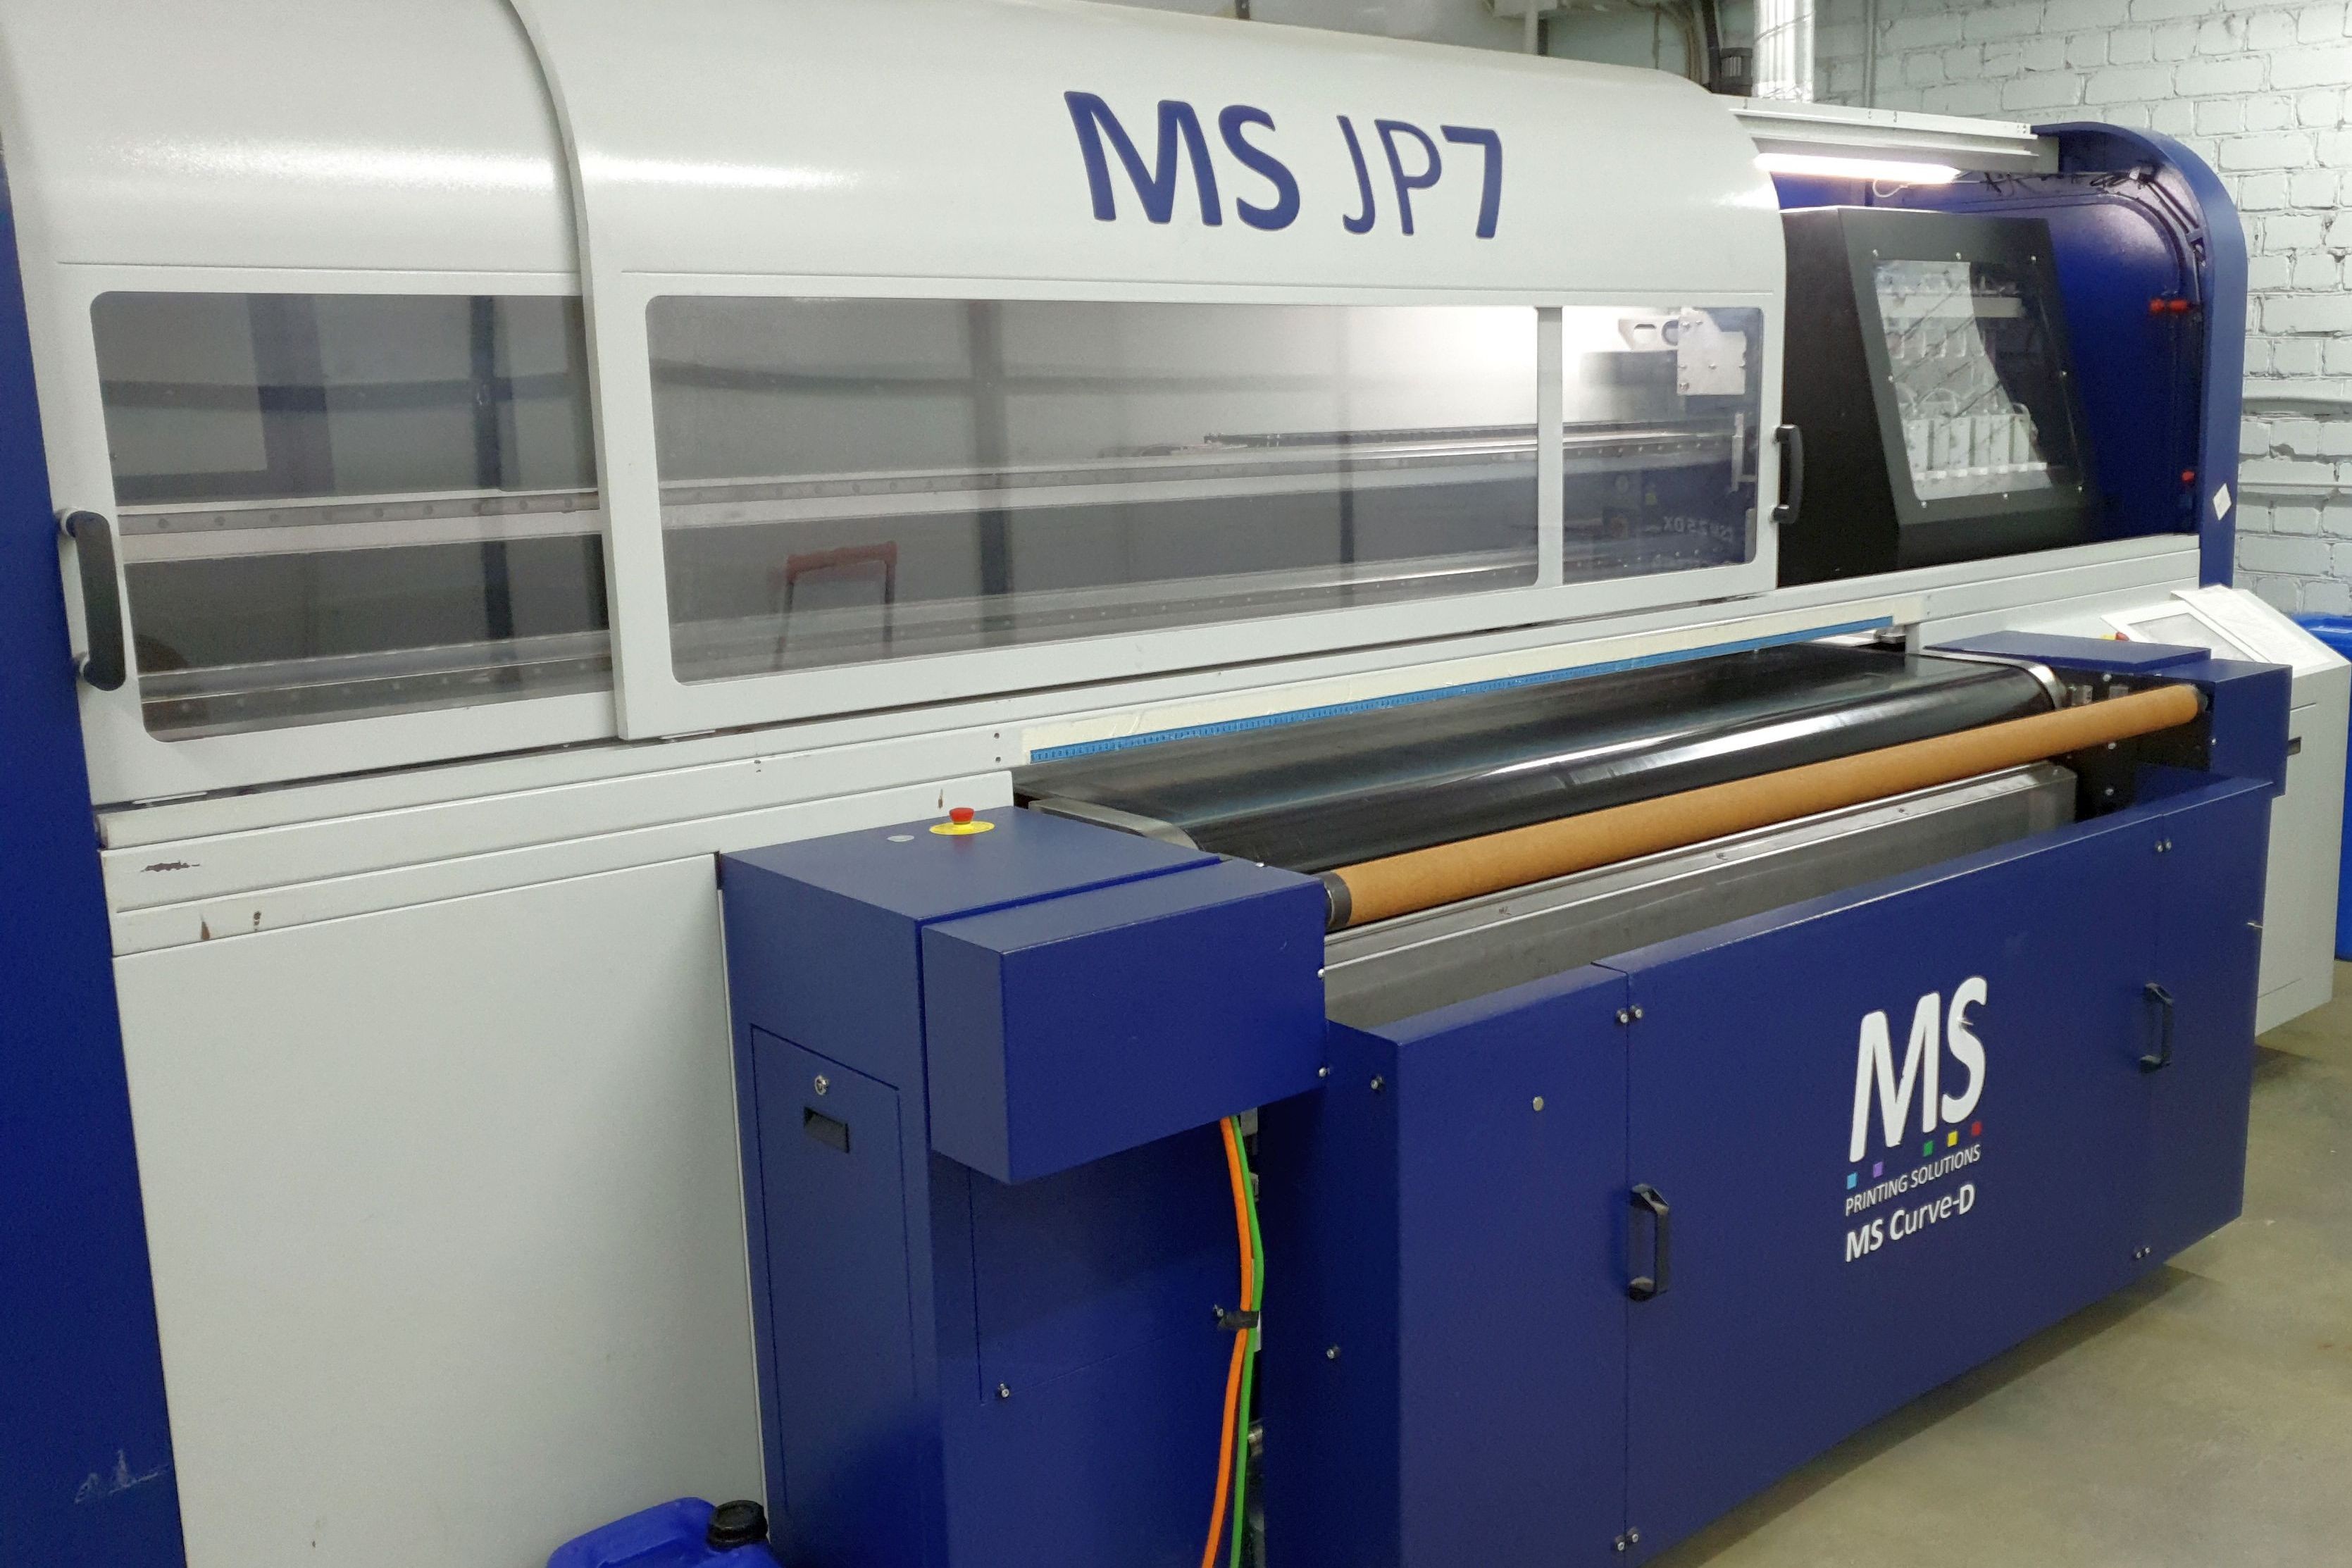 Текстильные принтеры MS JP7 и Epson установлены специалистами «Текстиль и технологии» в феврале–марте в Иваново, Санкт-Петербурге и Москве